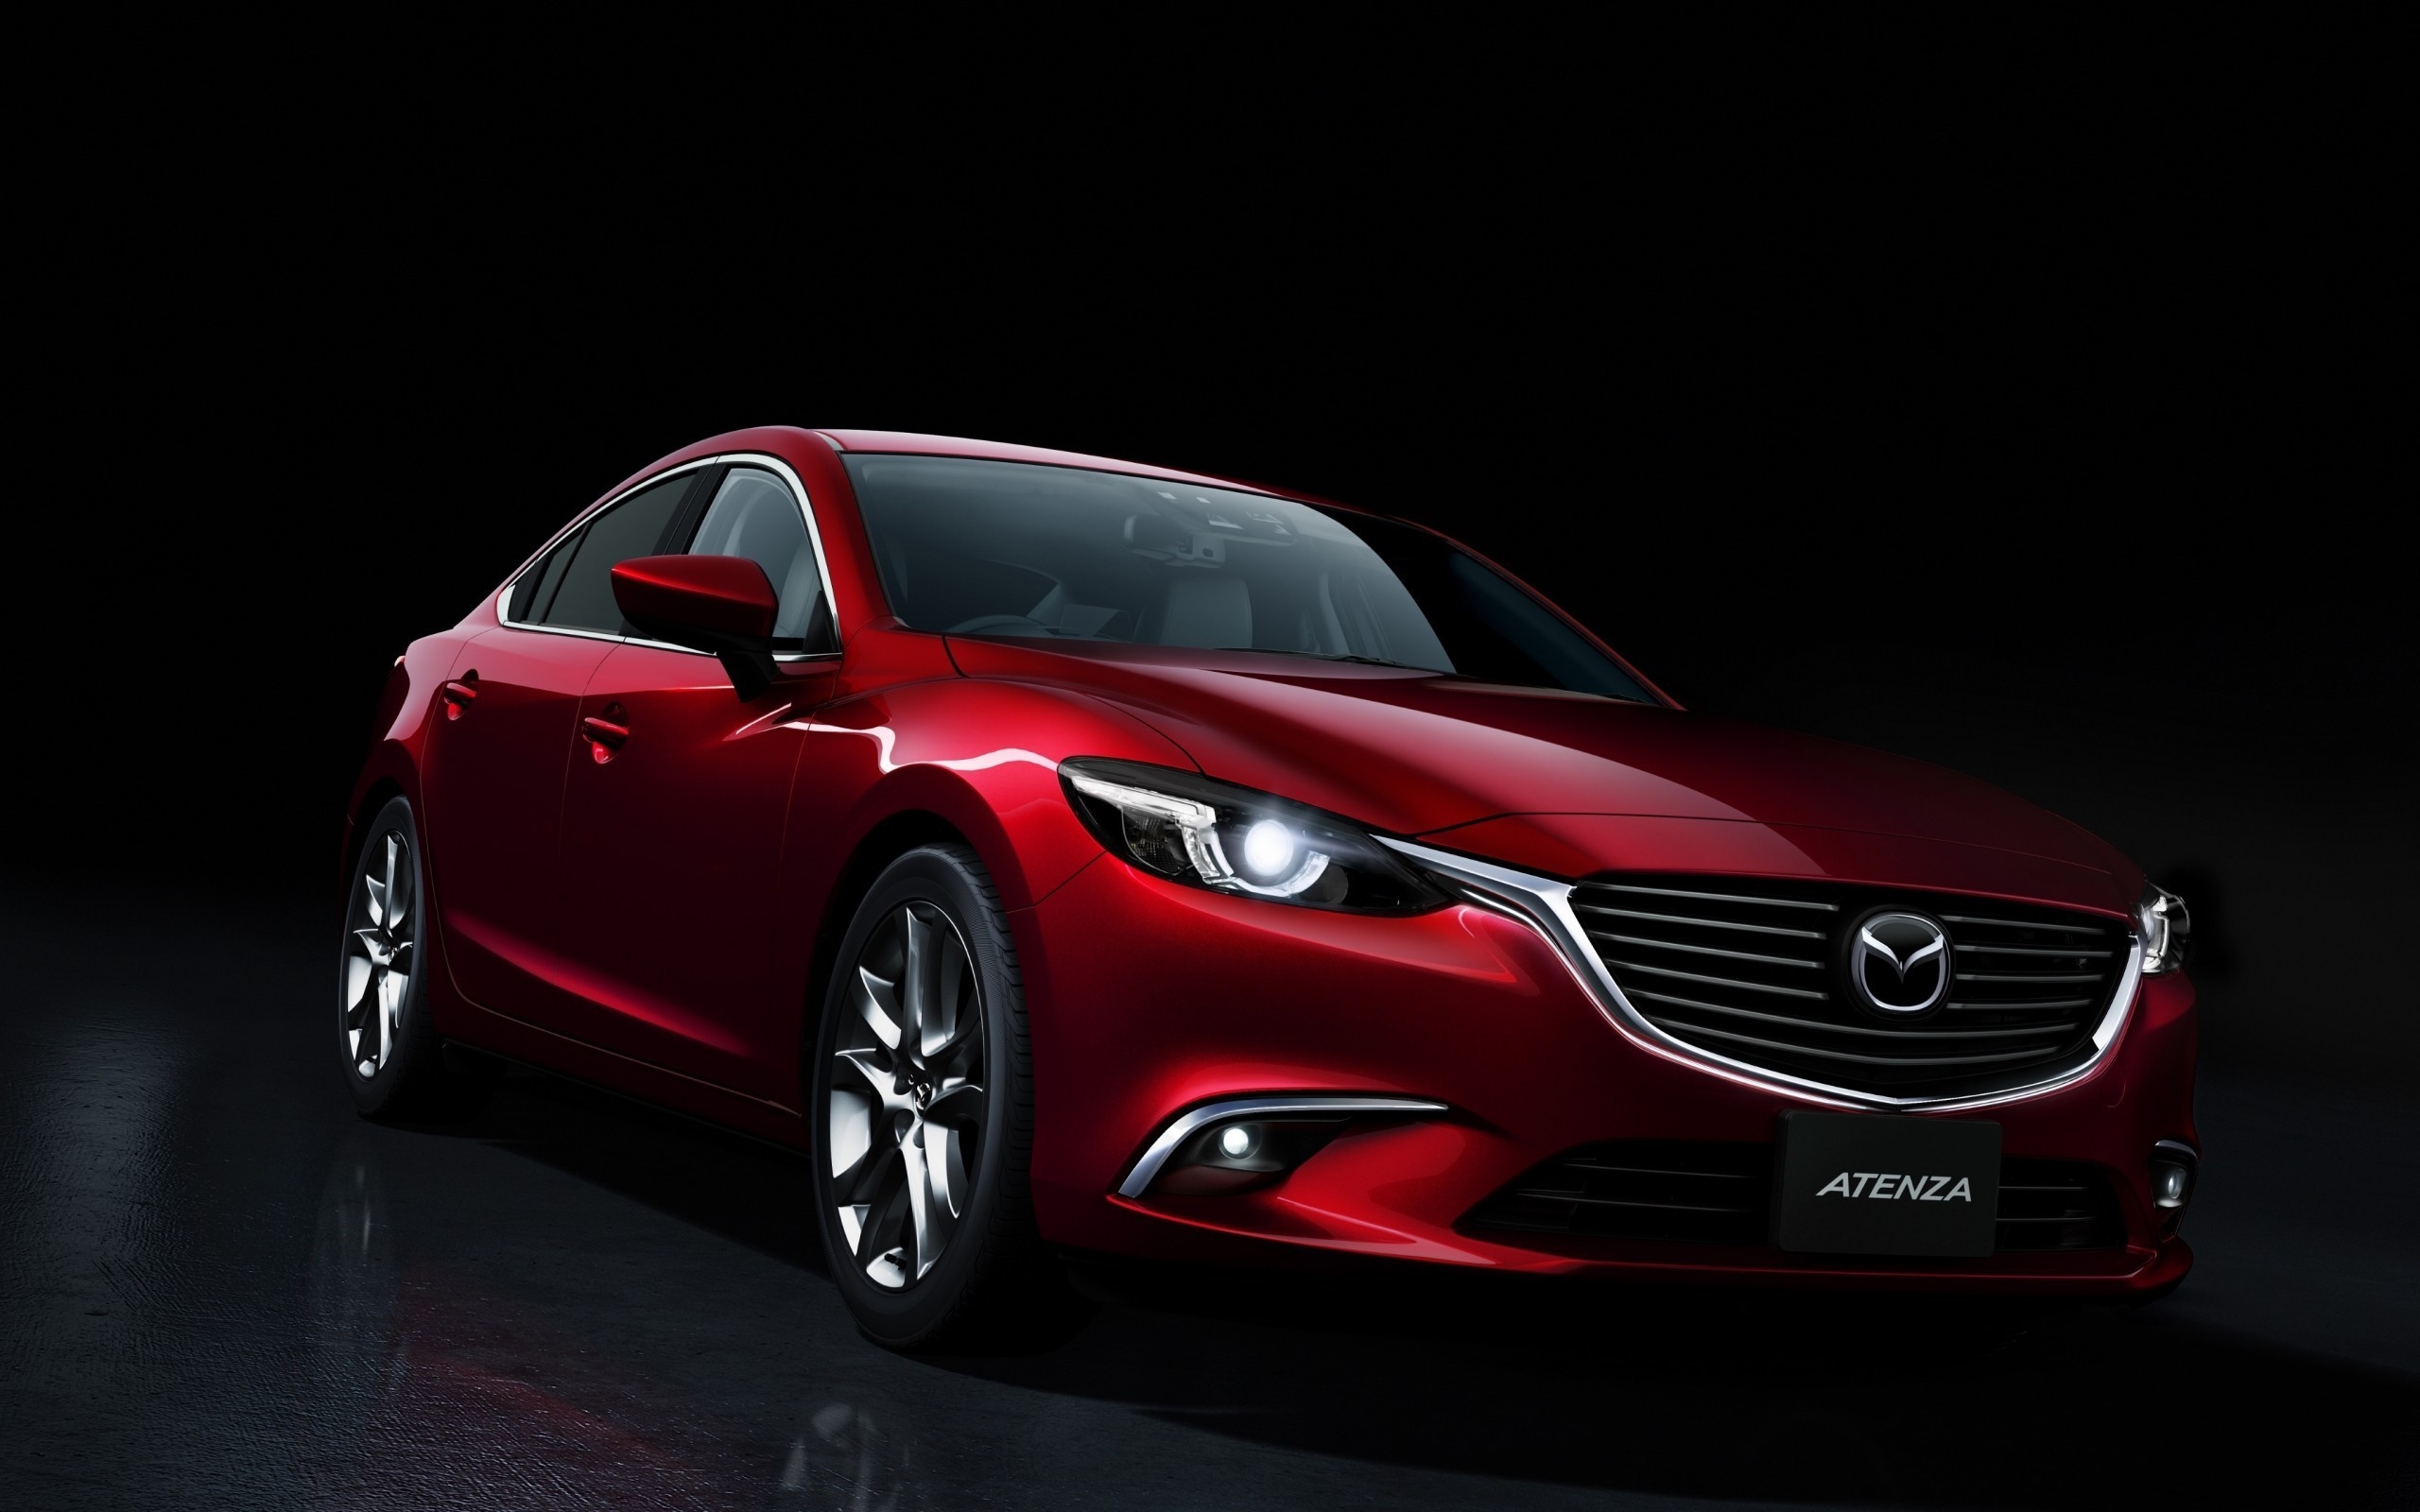 Mazda Atenza for 2560 x 1600 widescreen resolution